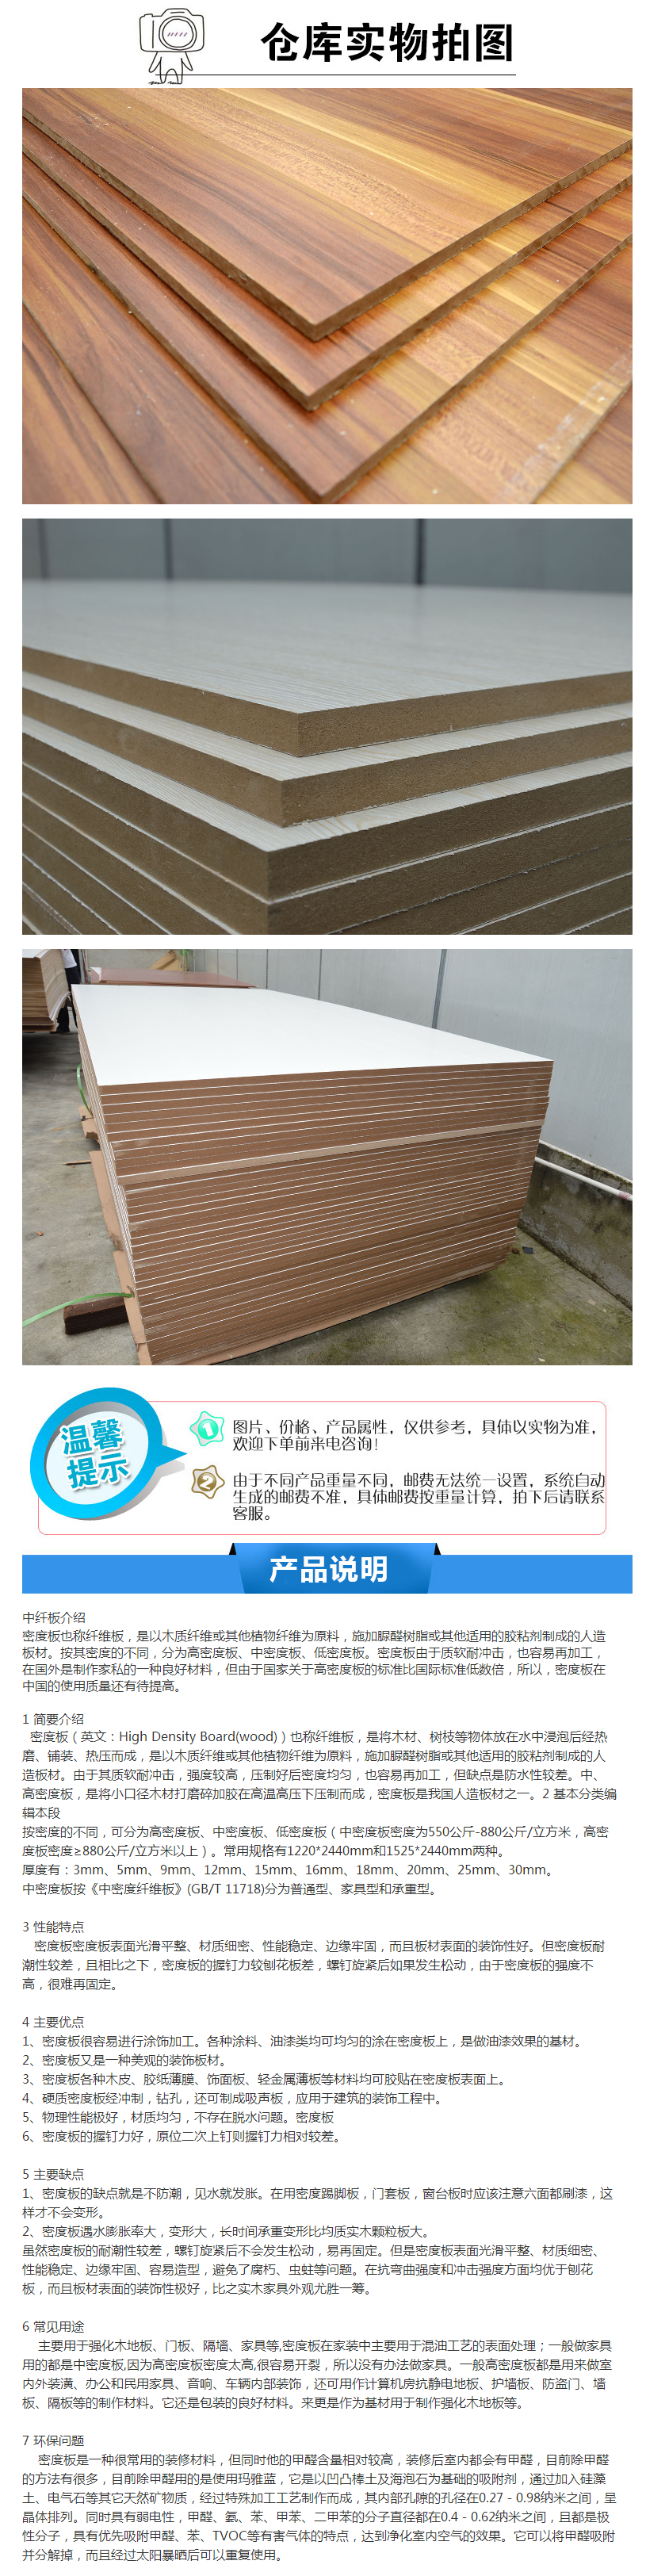 深圳厂家直销中纤板E1级家具板材三聚氢氨免漆板中密度板定制颜色-阿里巴巴.png